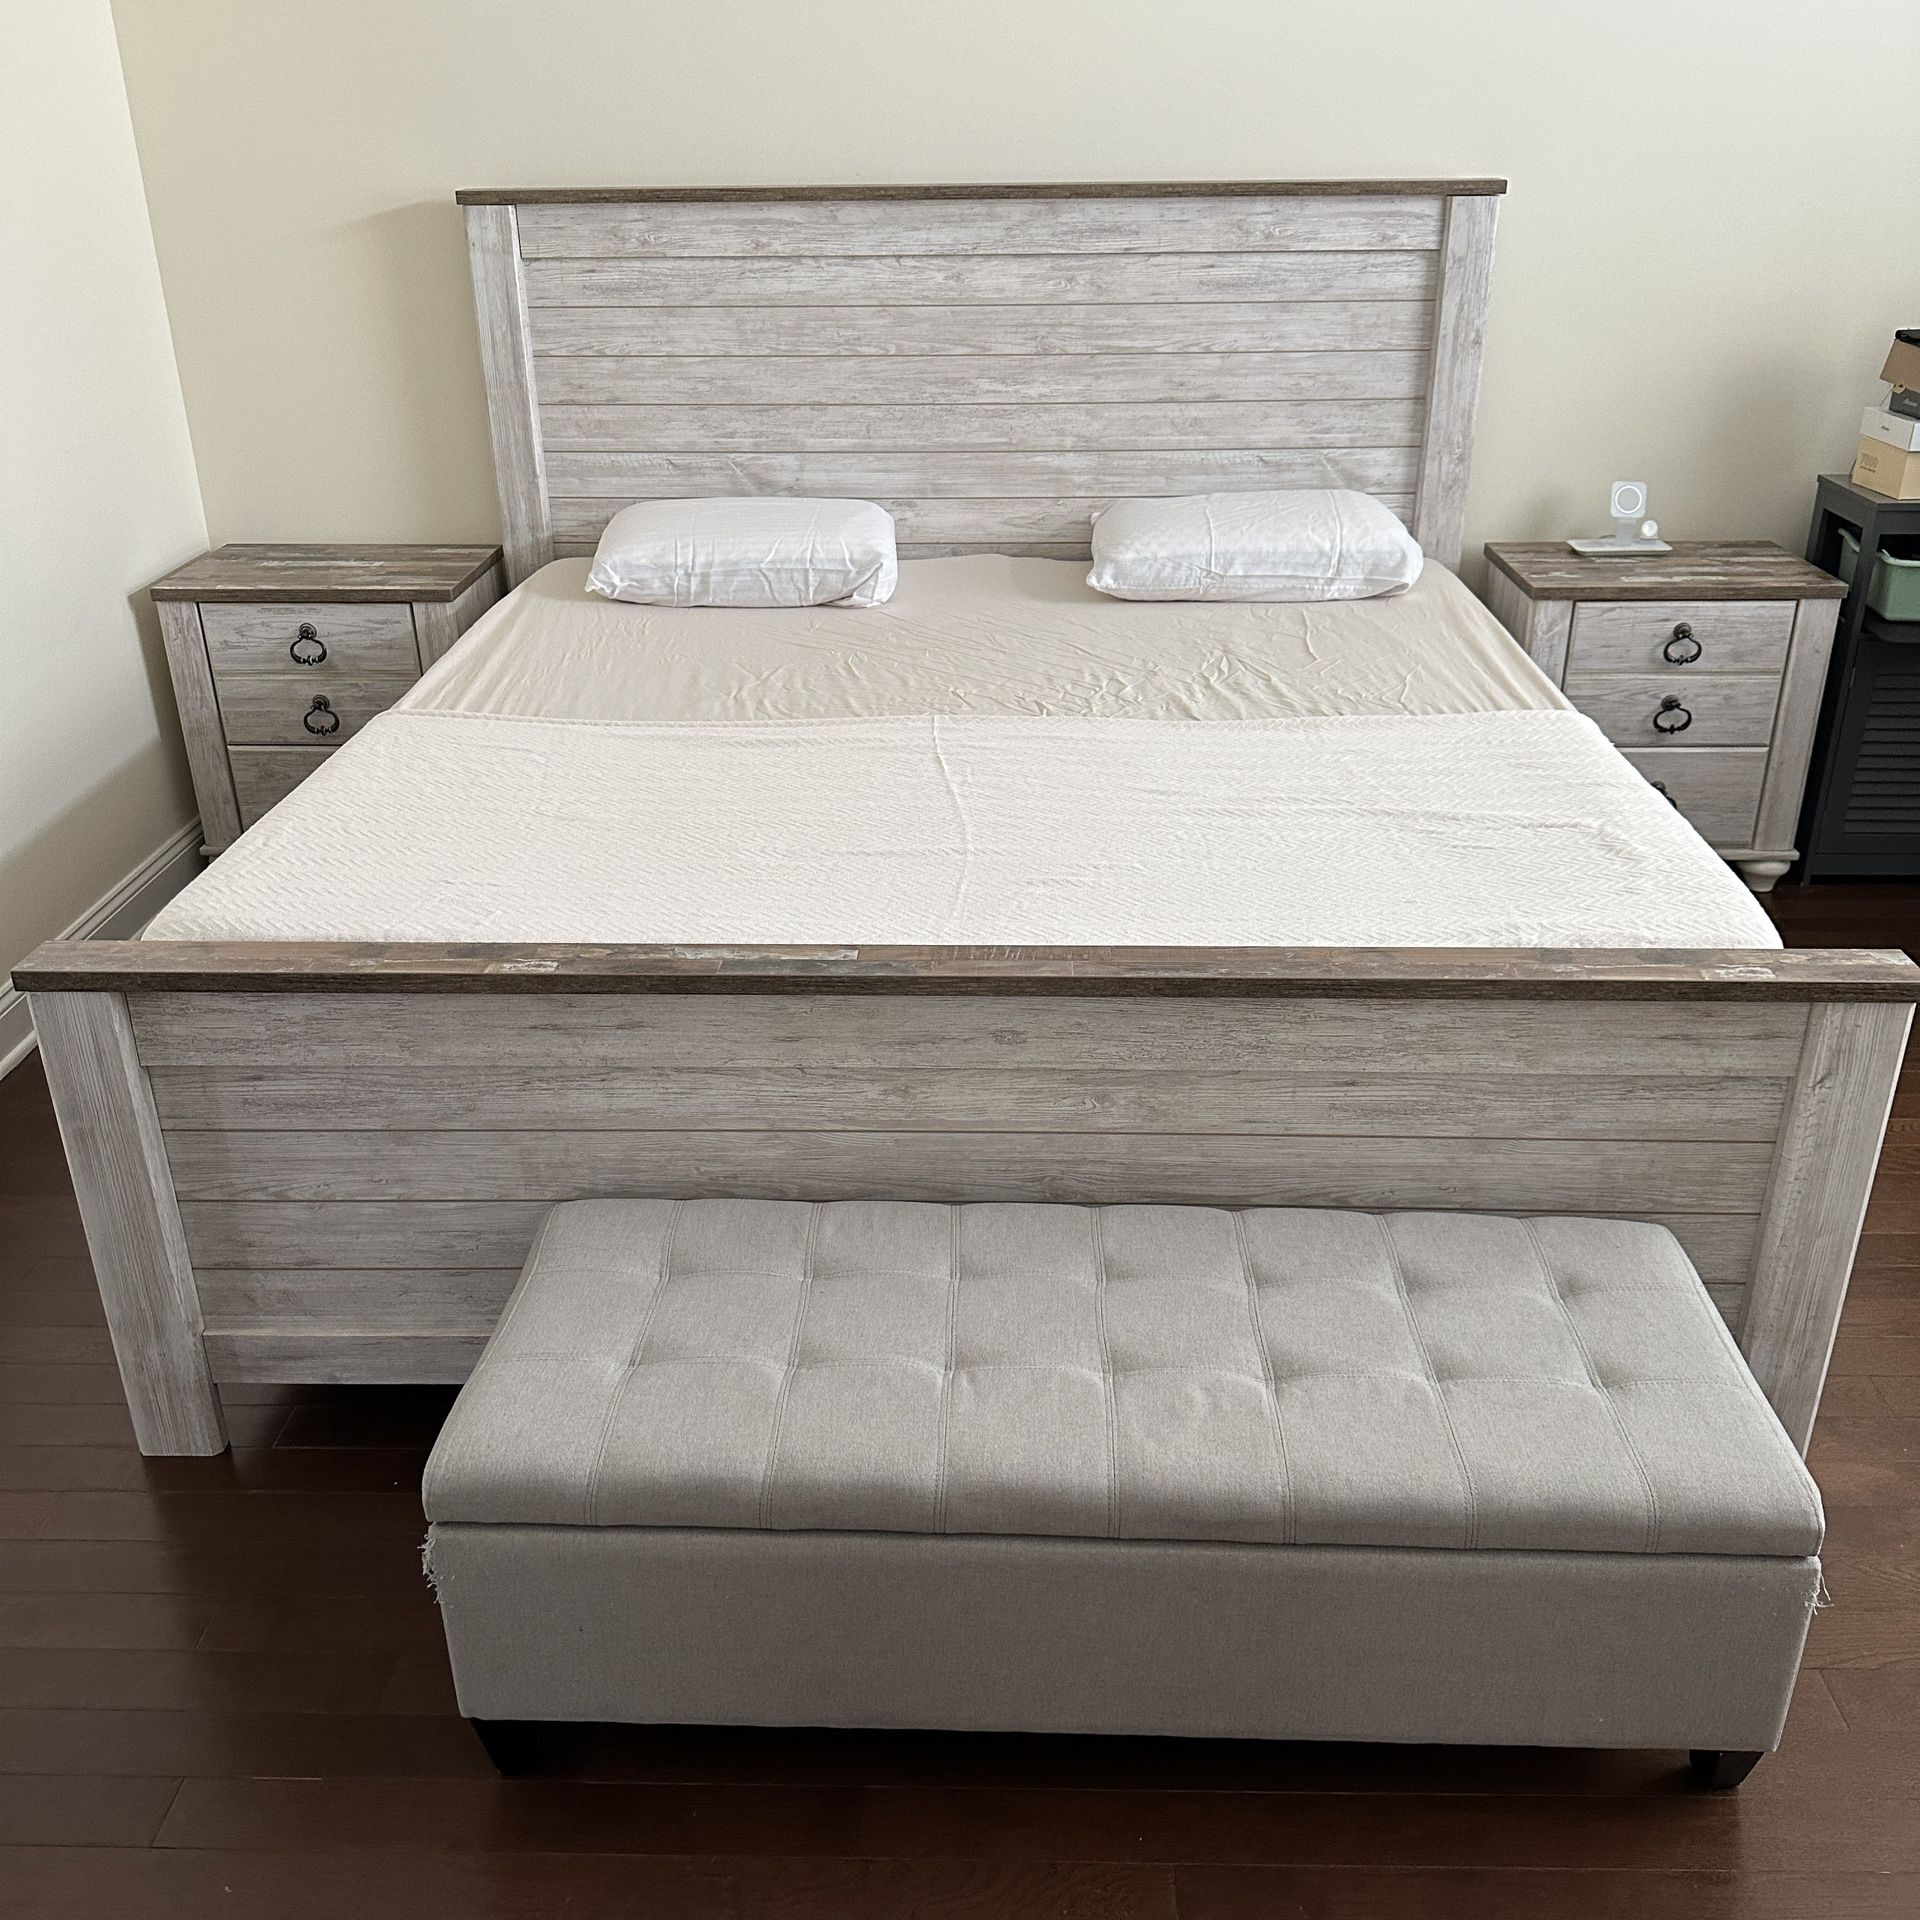 Complete Bedroom Set - Ashley Furniture 